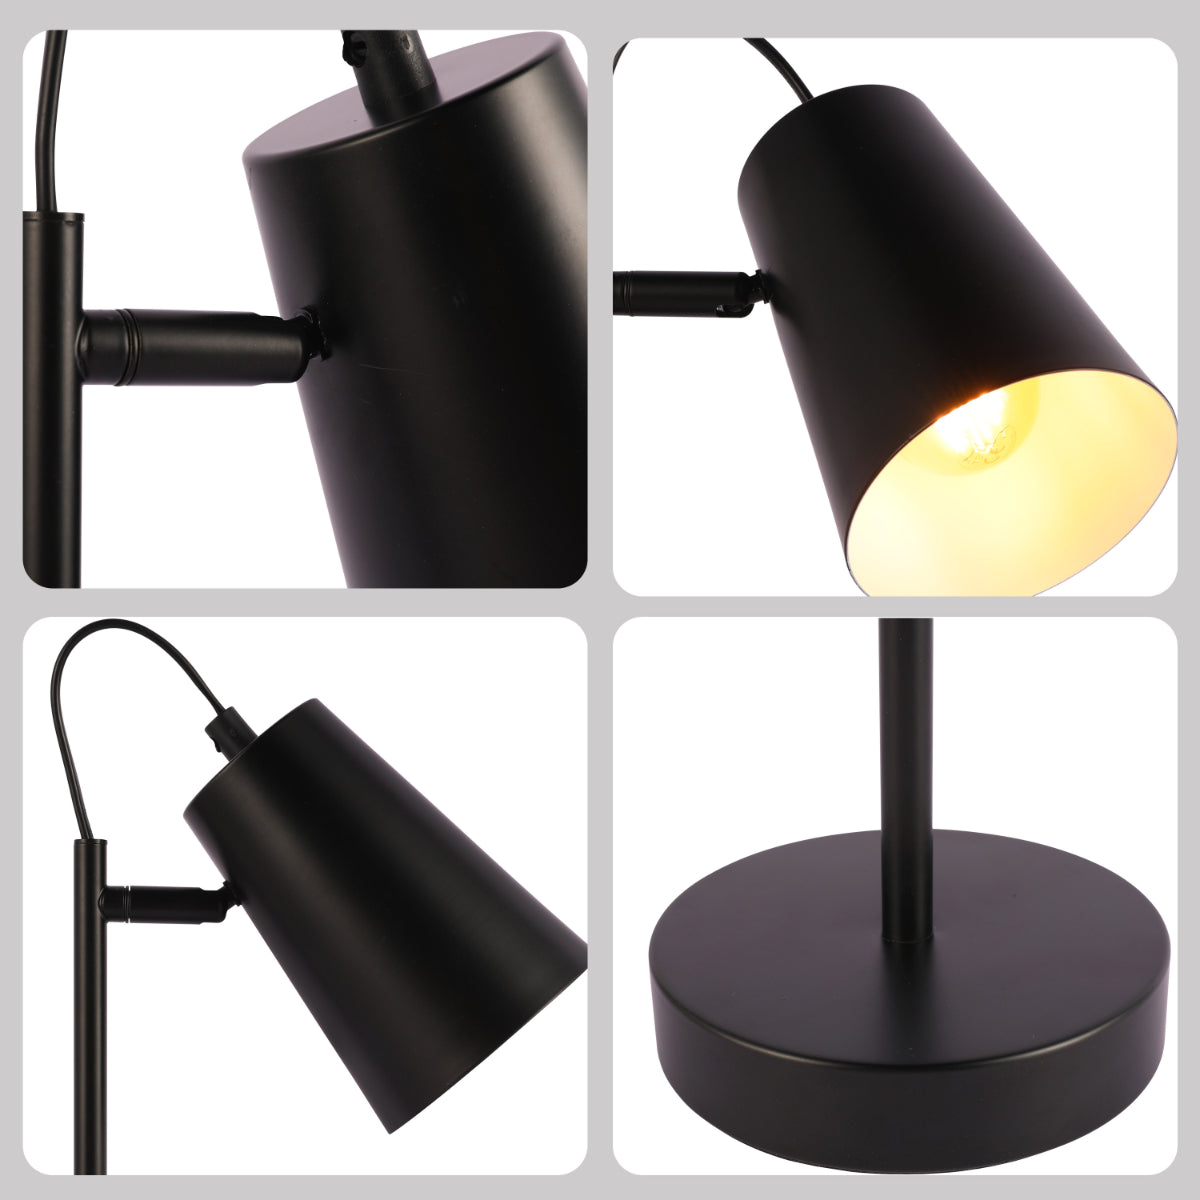 Lighting properties of Sleek Cut Cone Desk Lamp in Vibrant Colors - Modern Elegance 130-03664